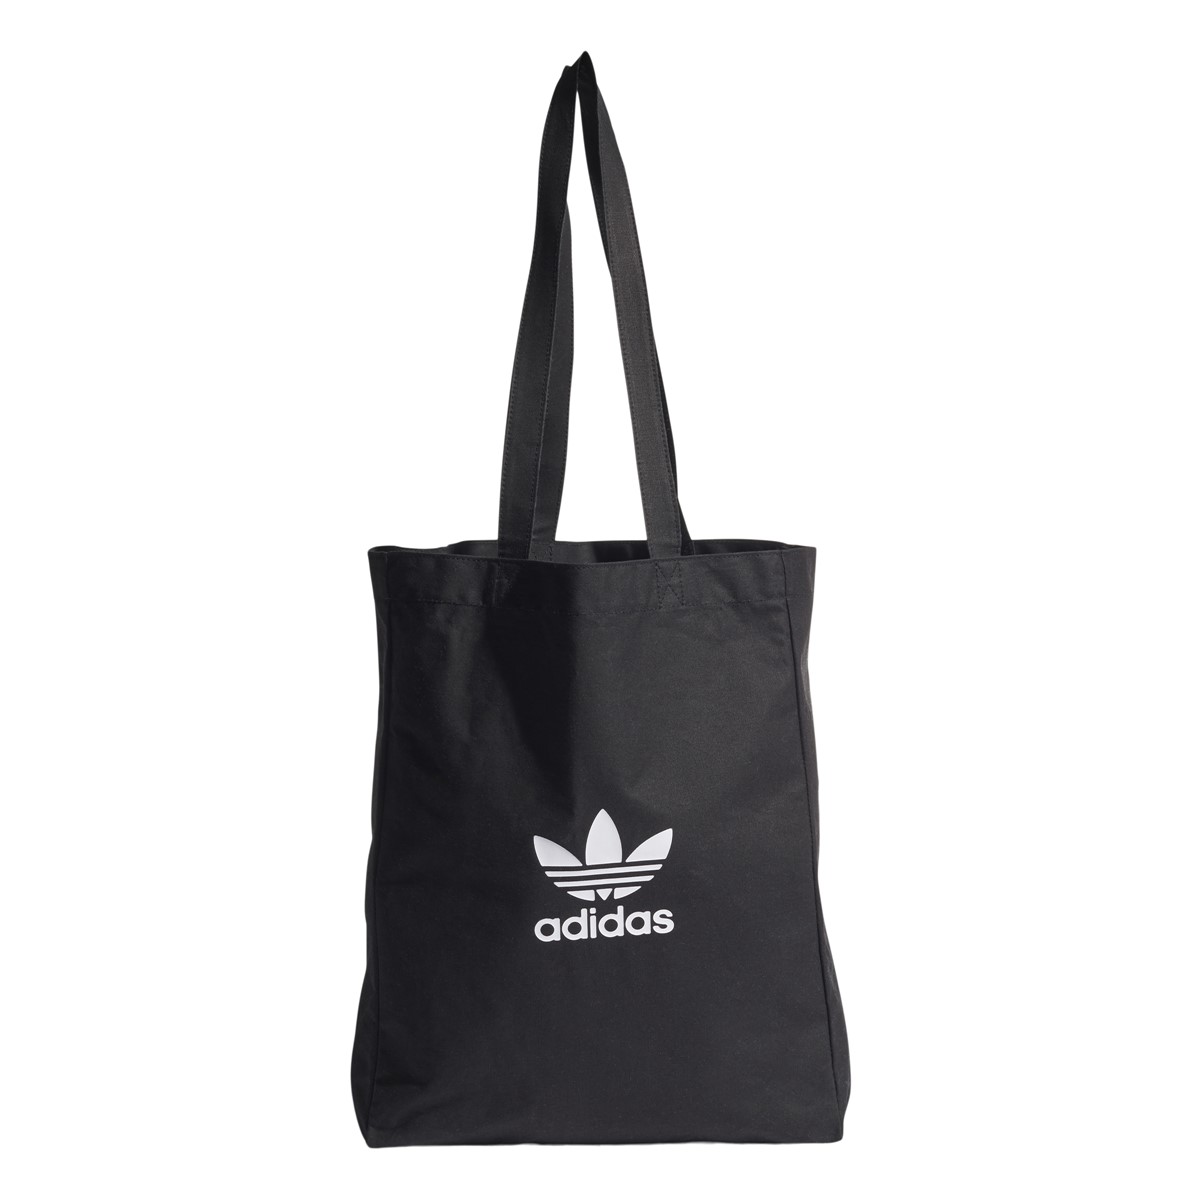 Adicolor Shopper Bag in Black/White